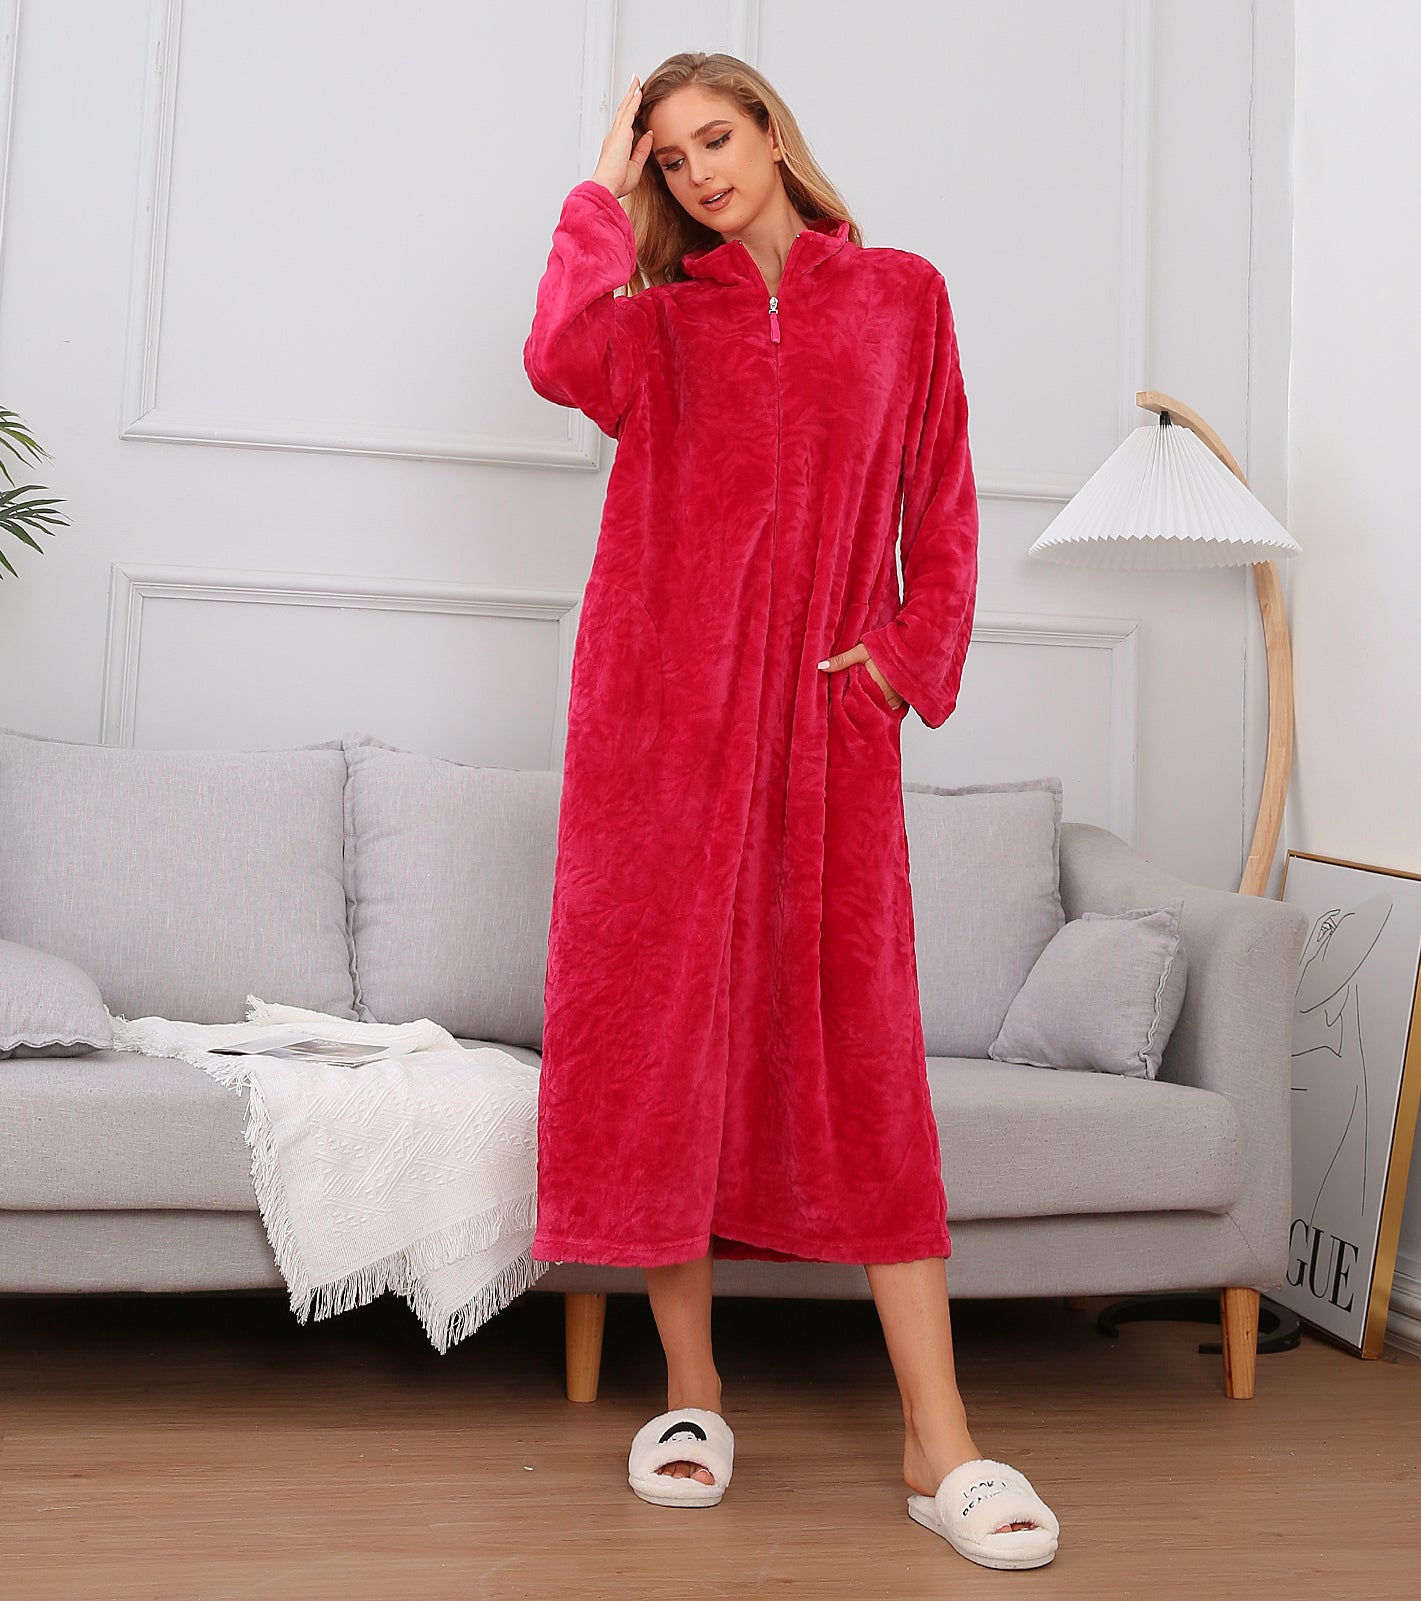 Lady Dressing Gown Soft Long Fleece Bath robe Men's Fleece zip